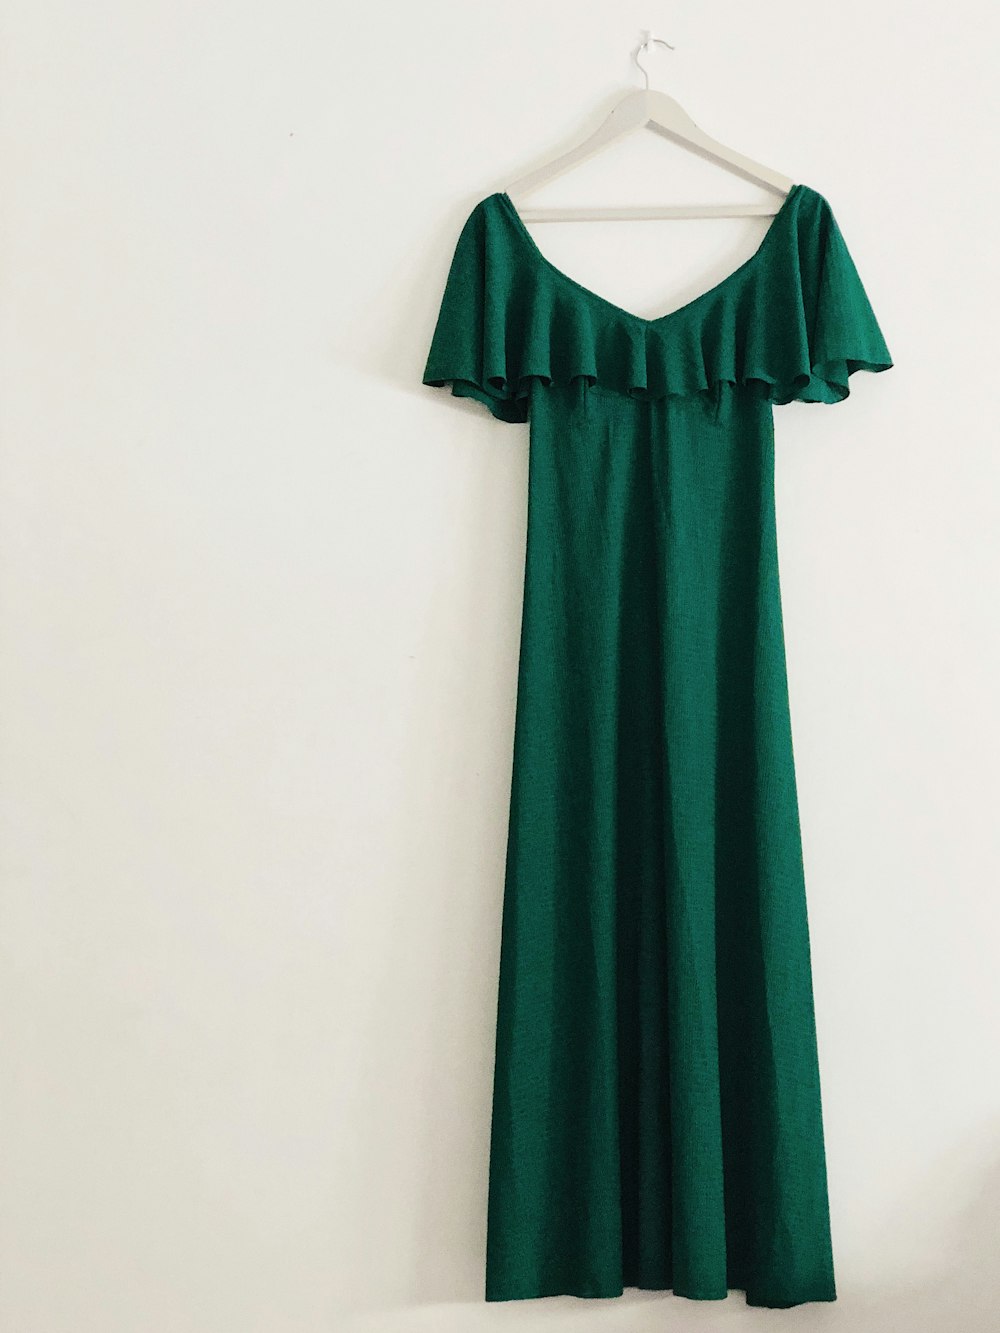 Grünes ärmelloses Kleid an weißer Wand aufgehängt